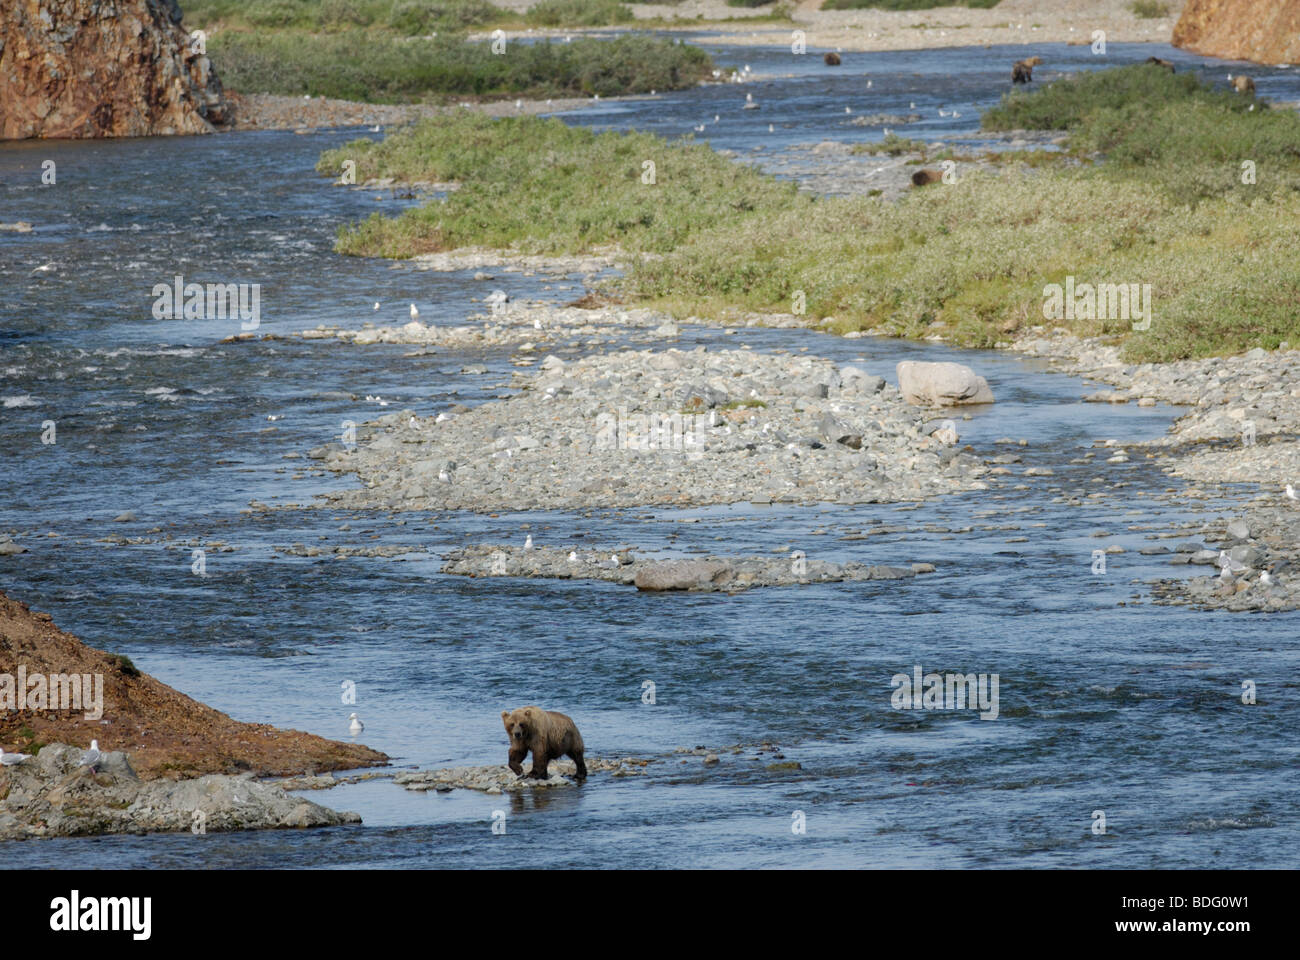 L'OURS BRUN (GRIZZLI), Ursus arctos horribilis, sur une rivière, Katmai National Park, Alaska Banque D'Images